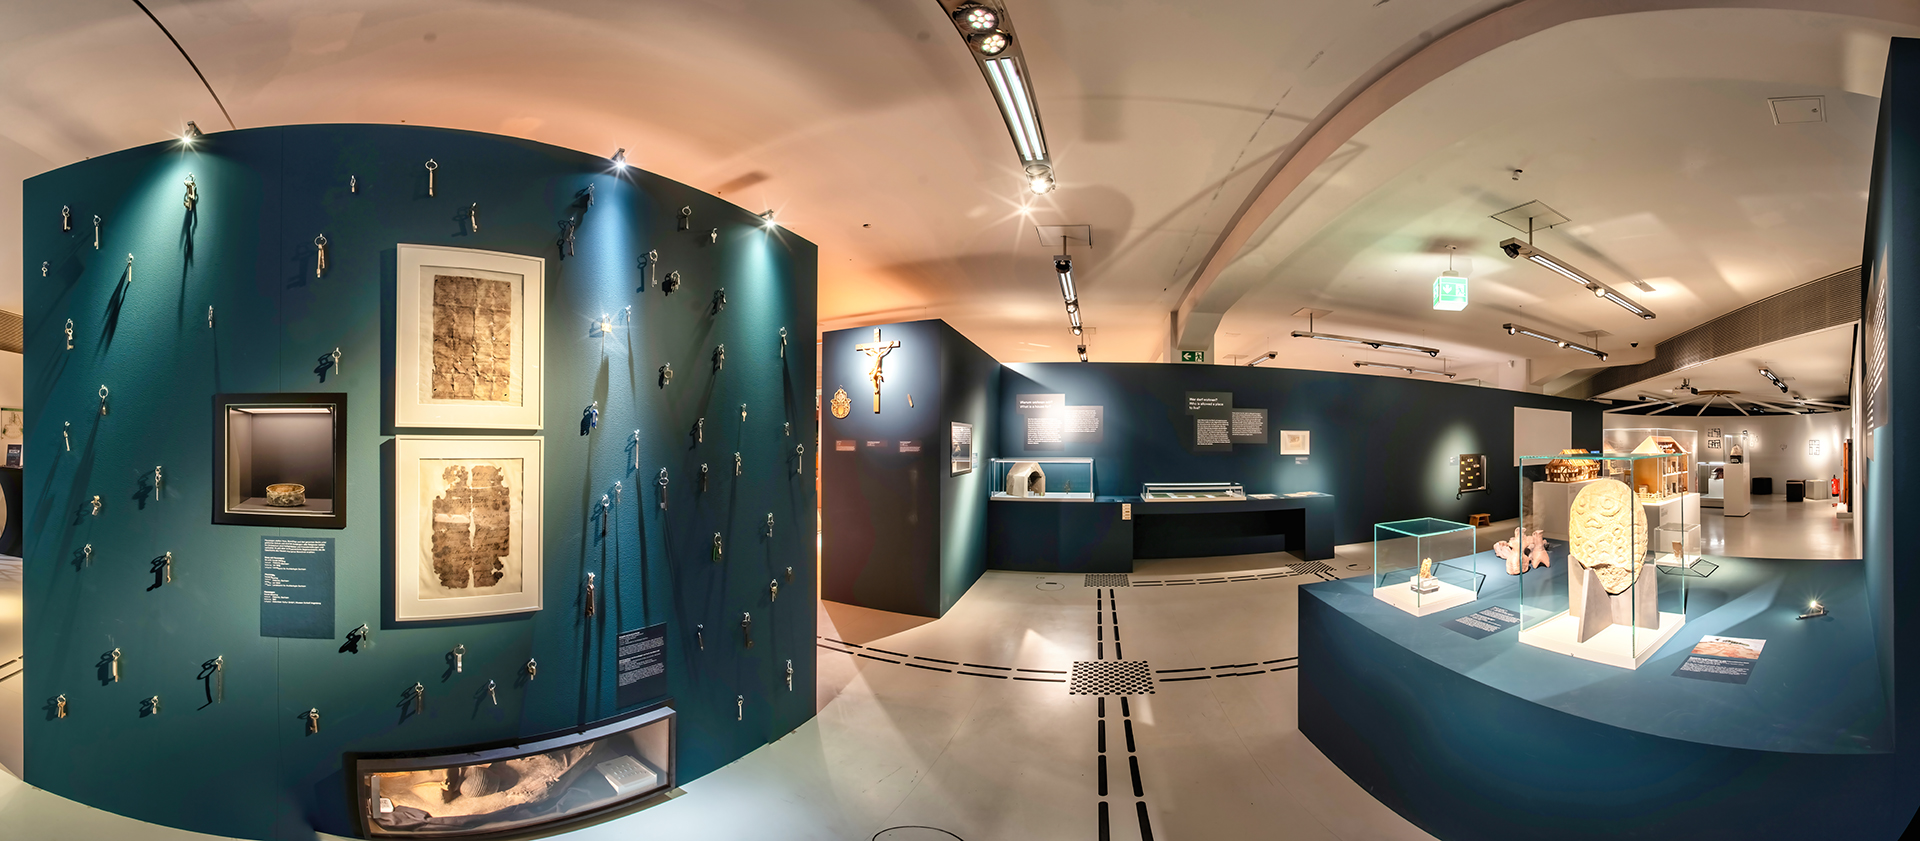 Das Bild zeigt einen blau gestrichenen Raum mit Vitrinen und Objekten an der Wand. Durch den Raum verläuft ein Bodenleitsystem. Ganz links ist eine Wand mit ganz vielen Schlüsseln. 